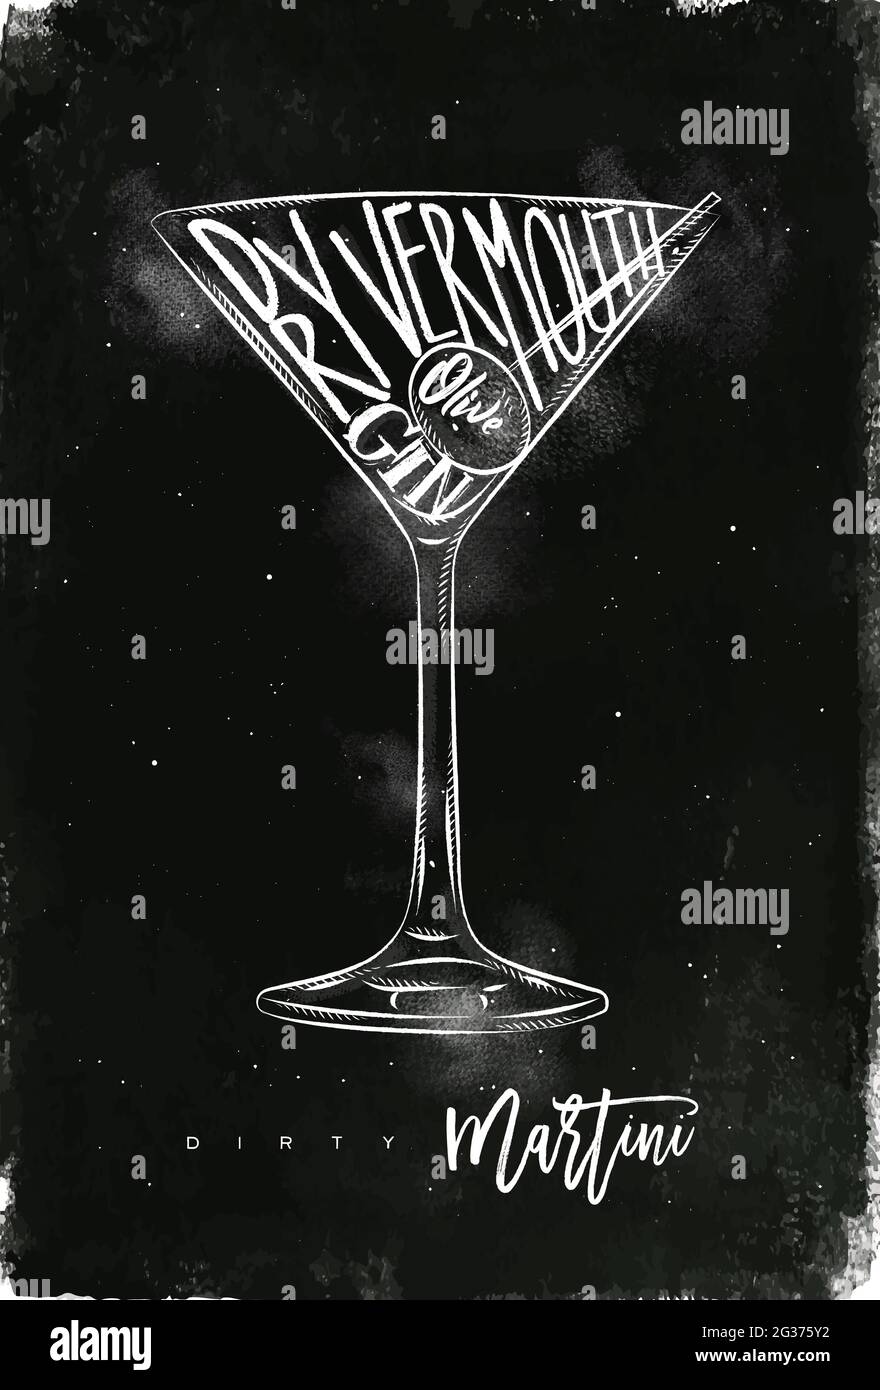 Sucio cóctel martini letras vermouth seco, ginebra, oliva en estilo gráfico vintage dibujo con tiza sobre fondo de pizarra Ilustración del Vector